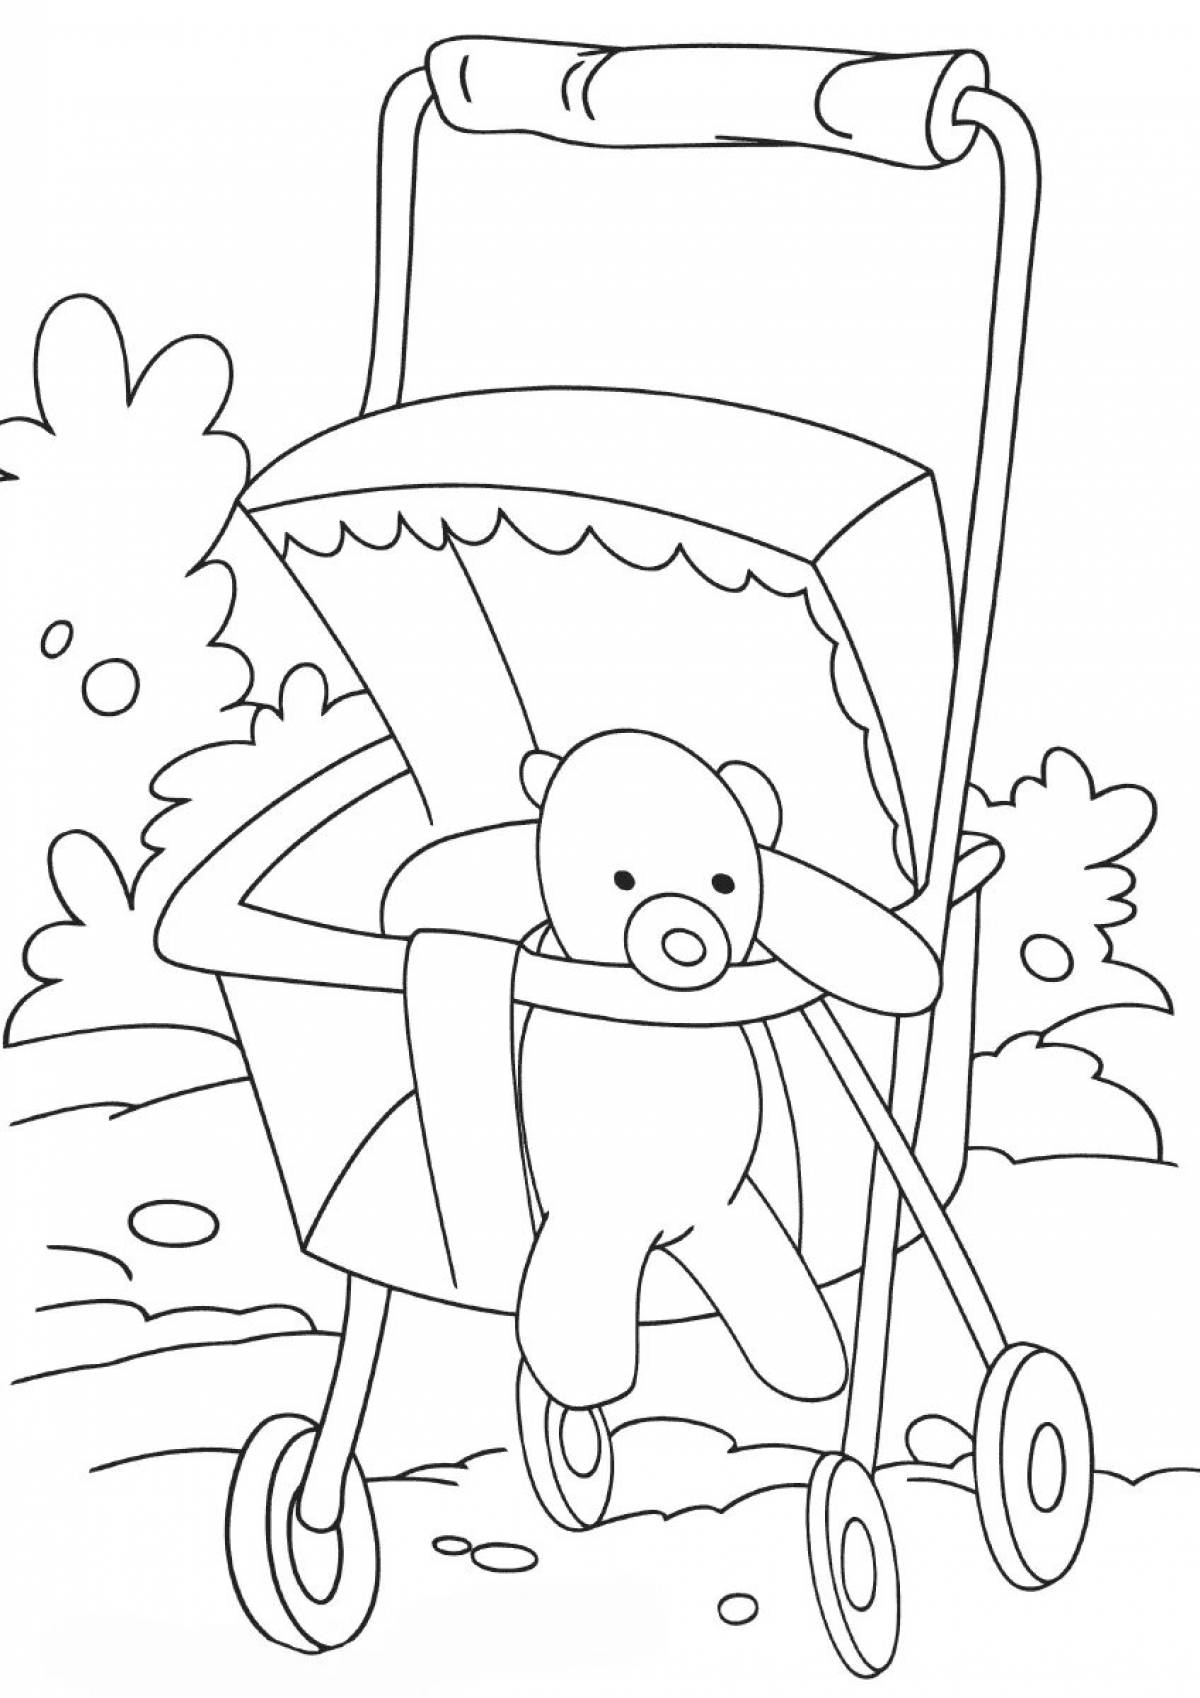 Baby in stroller #2